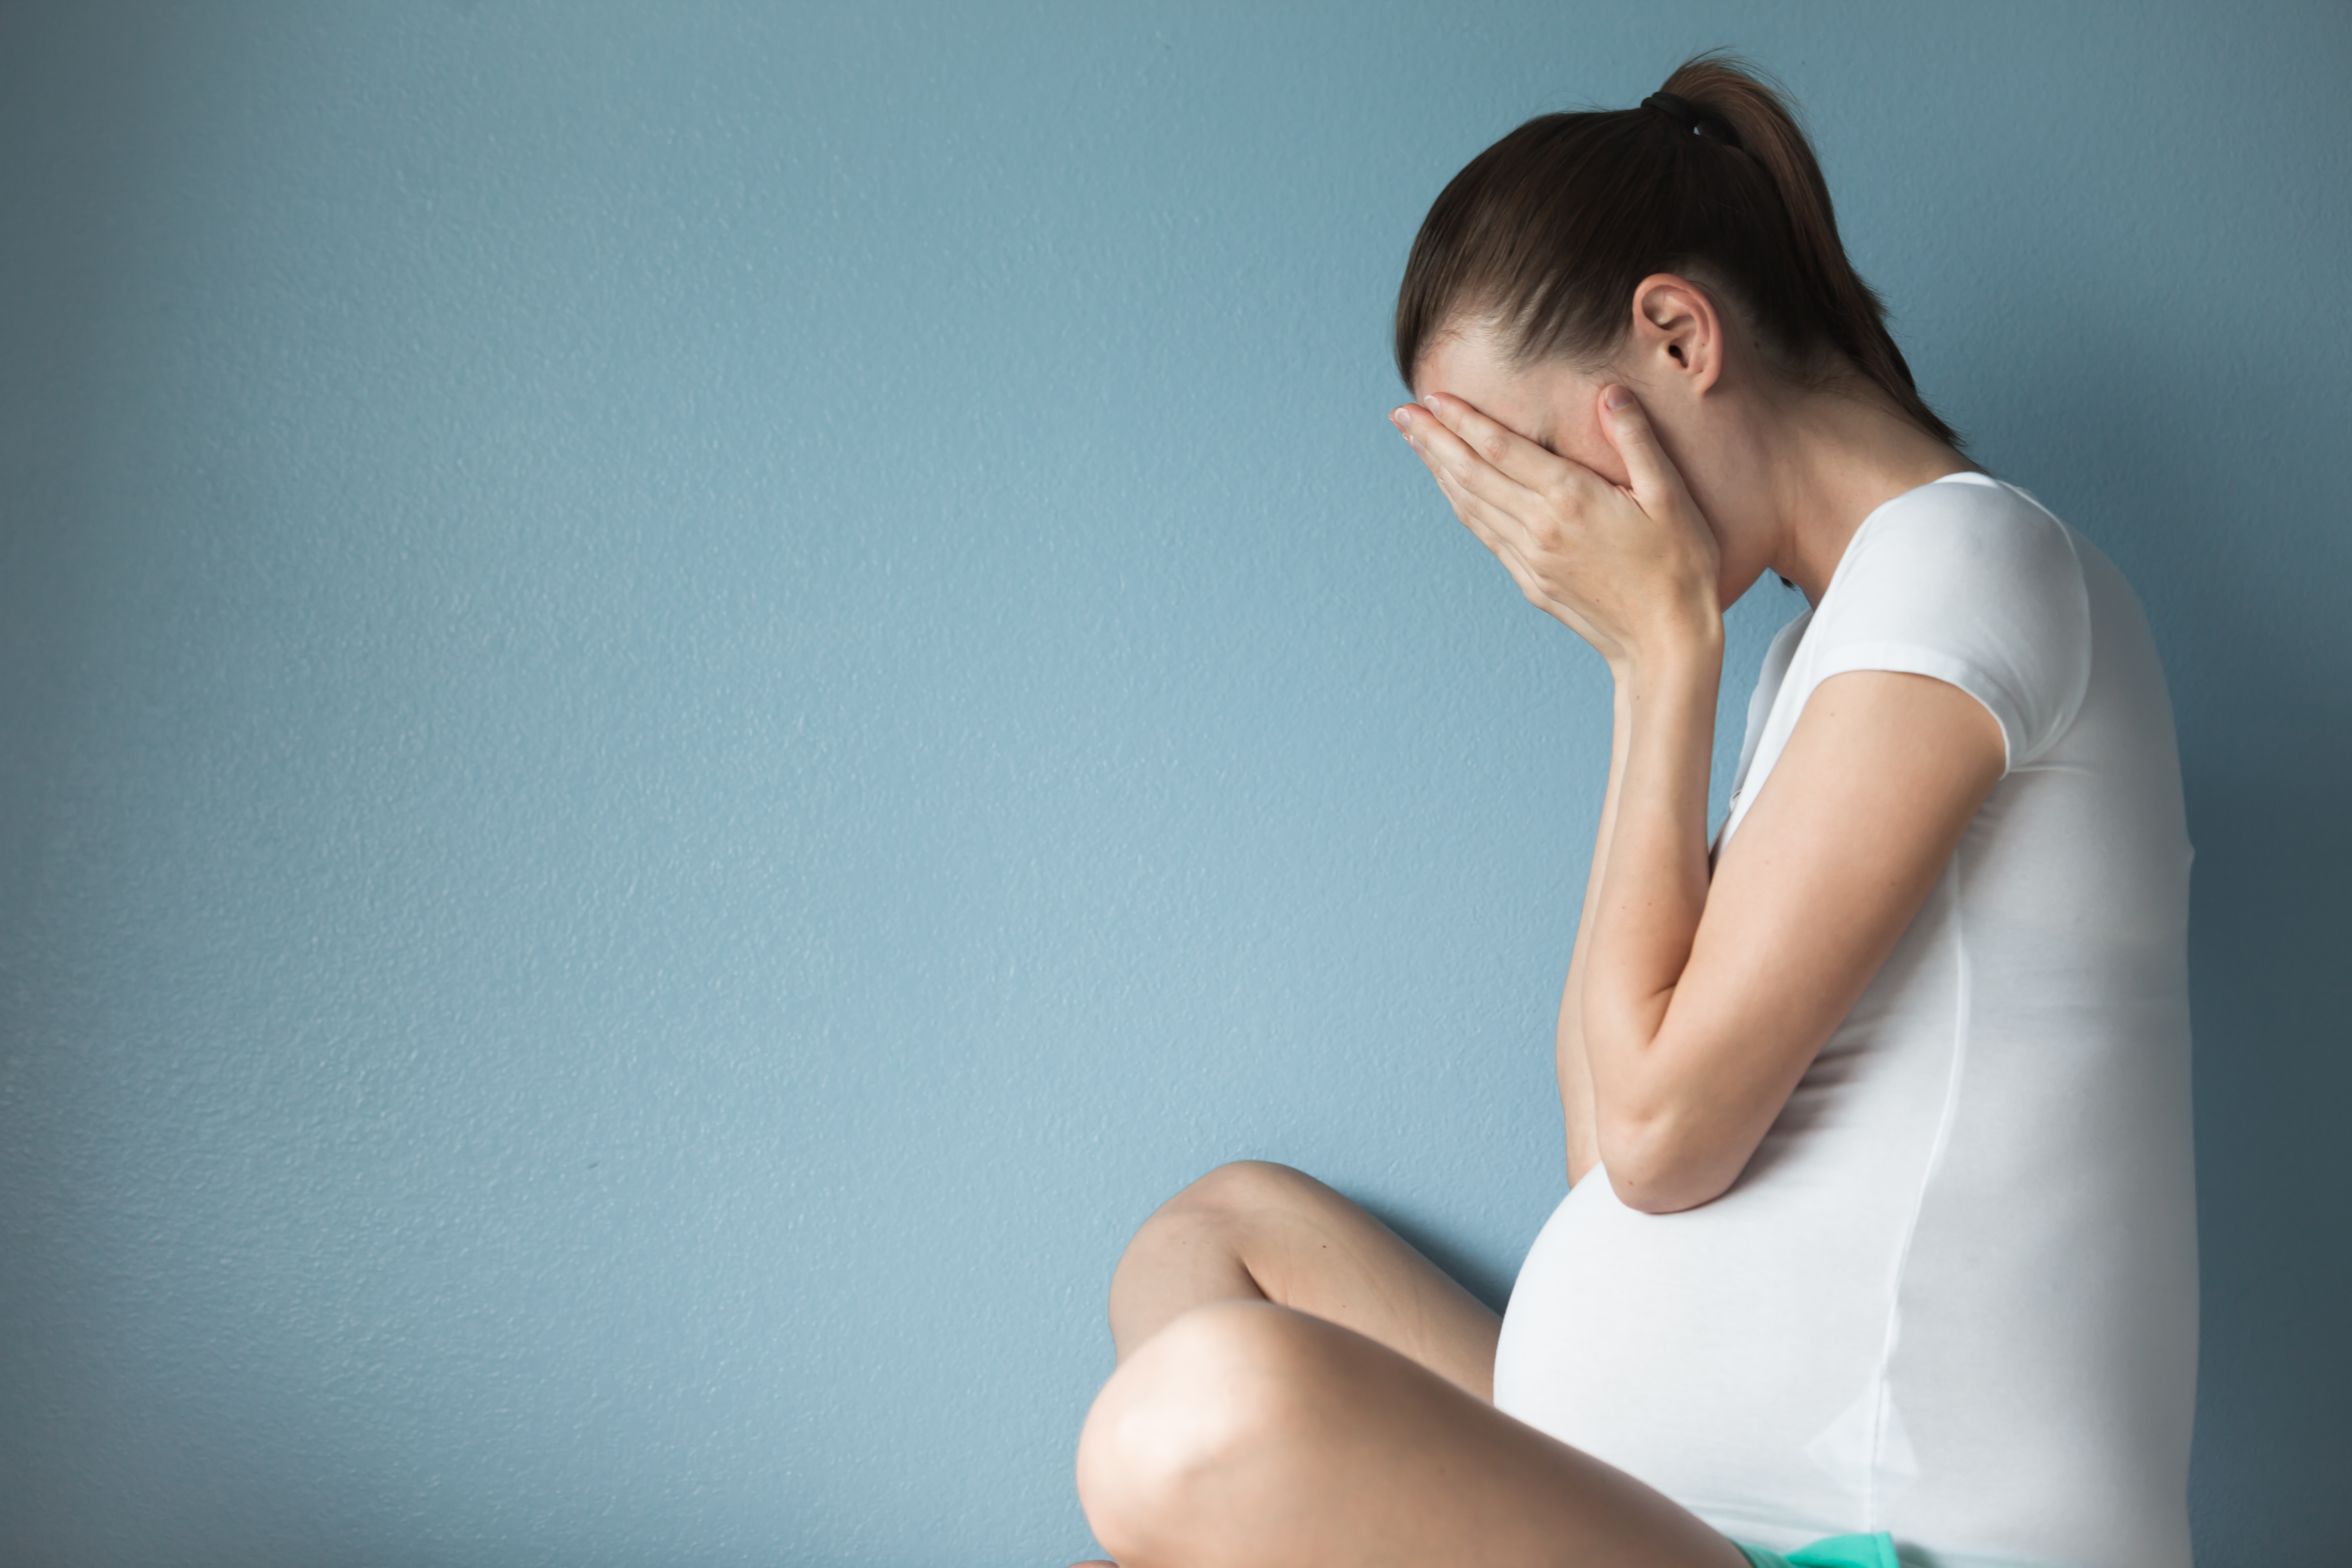 Eine schwangere Frau mit dem Kopf in ihren Händen | Quelle: Shutterstock